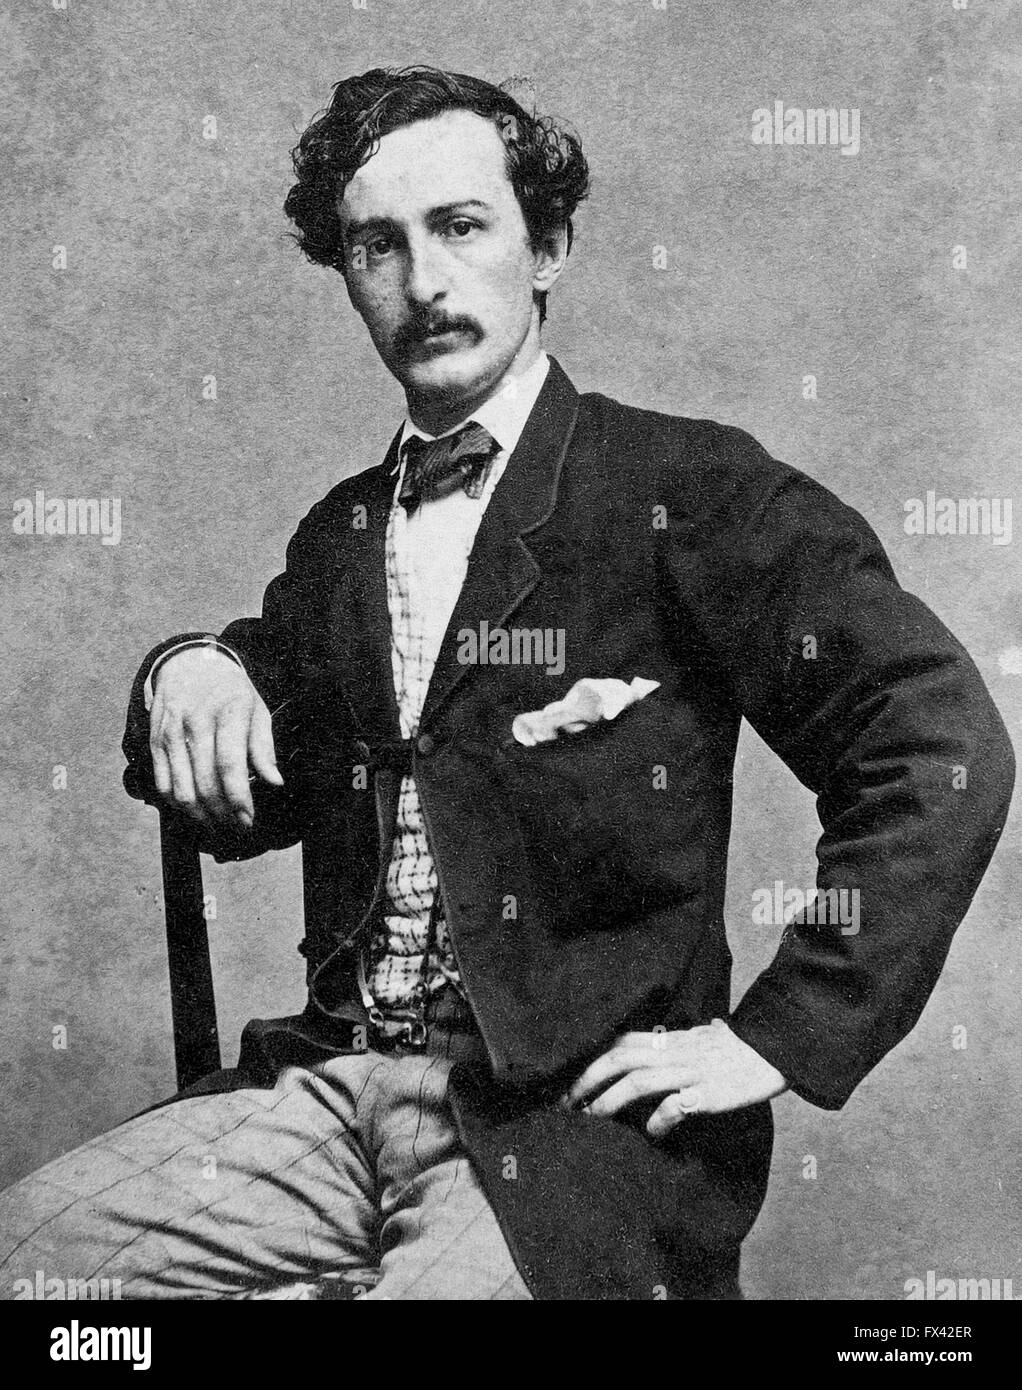 John Wilkes Booth, der Präsident Abraham Lincoln ermordet. Stockfoto